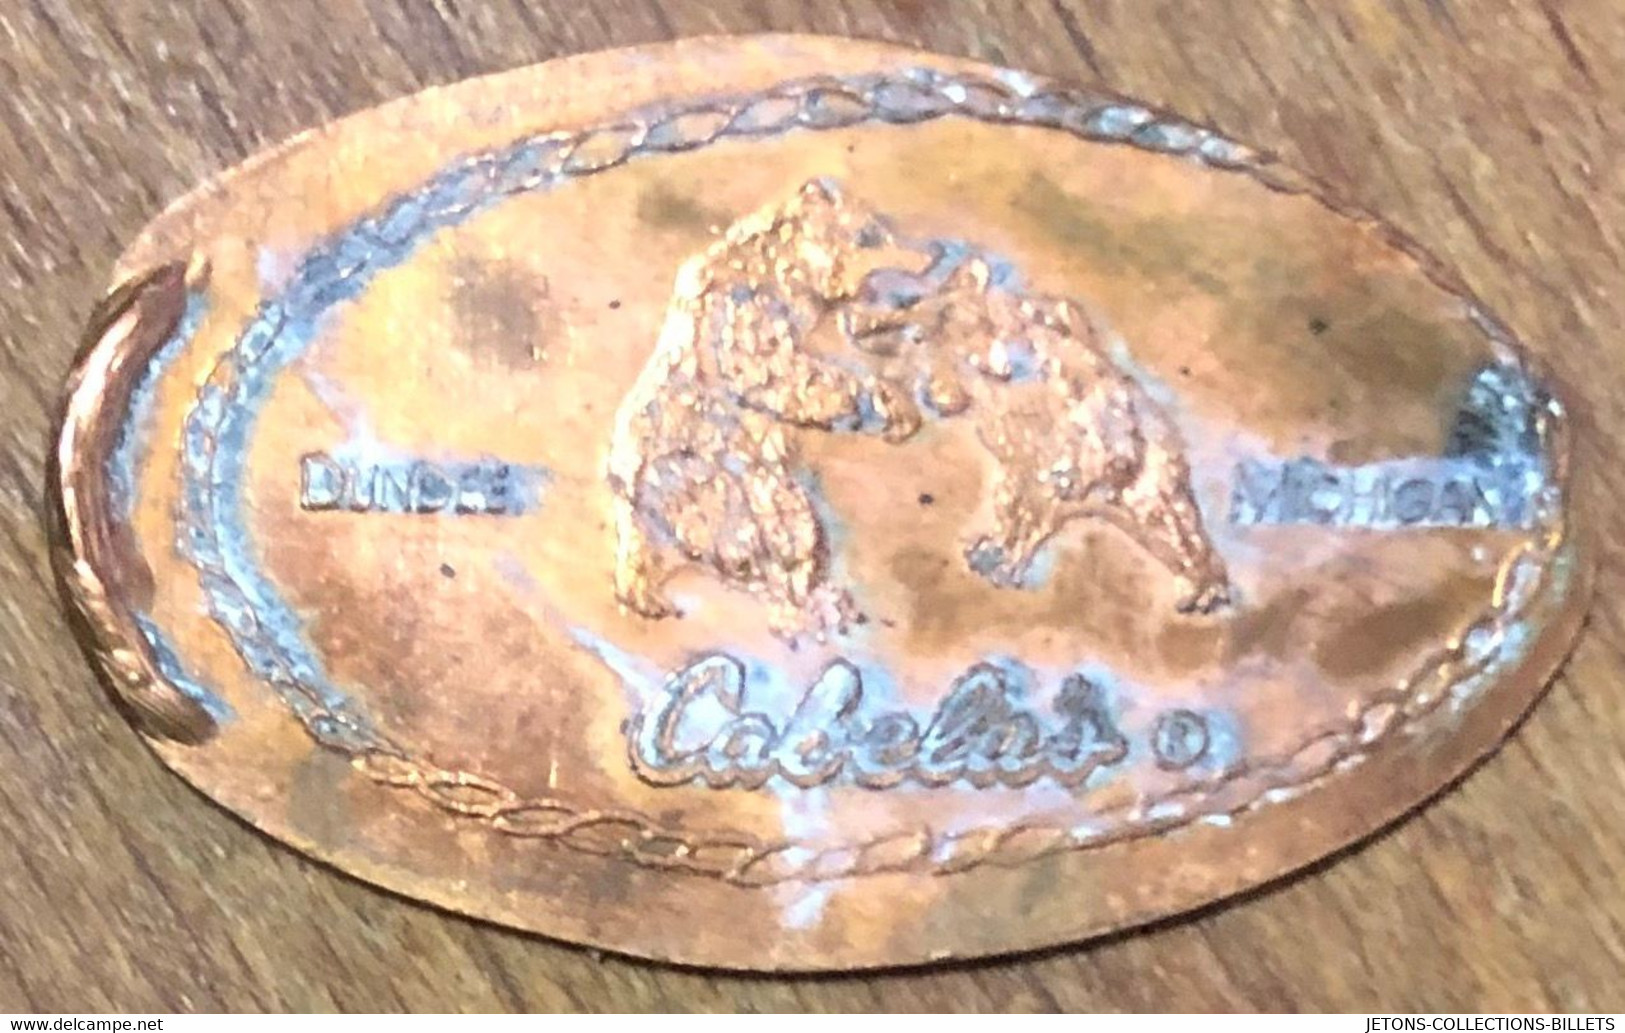 ÉTATS-UNIS USA CABELAS DUNDEE MICHIGAN PIÈCE ÉCRASÉE PENNY ELONGATED COIN MEDAILLE TOURISTIQUE MEDALS TOKENS - Souvenirmunten (elongated Coins)